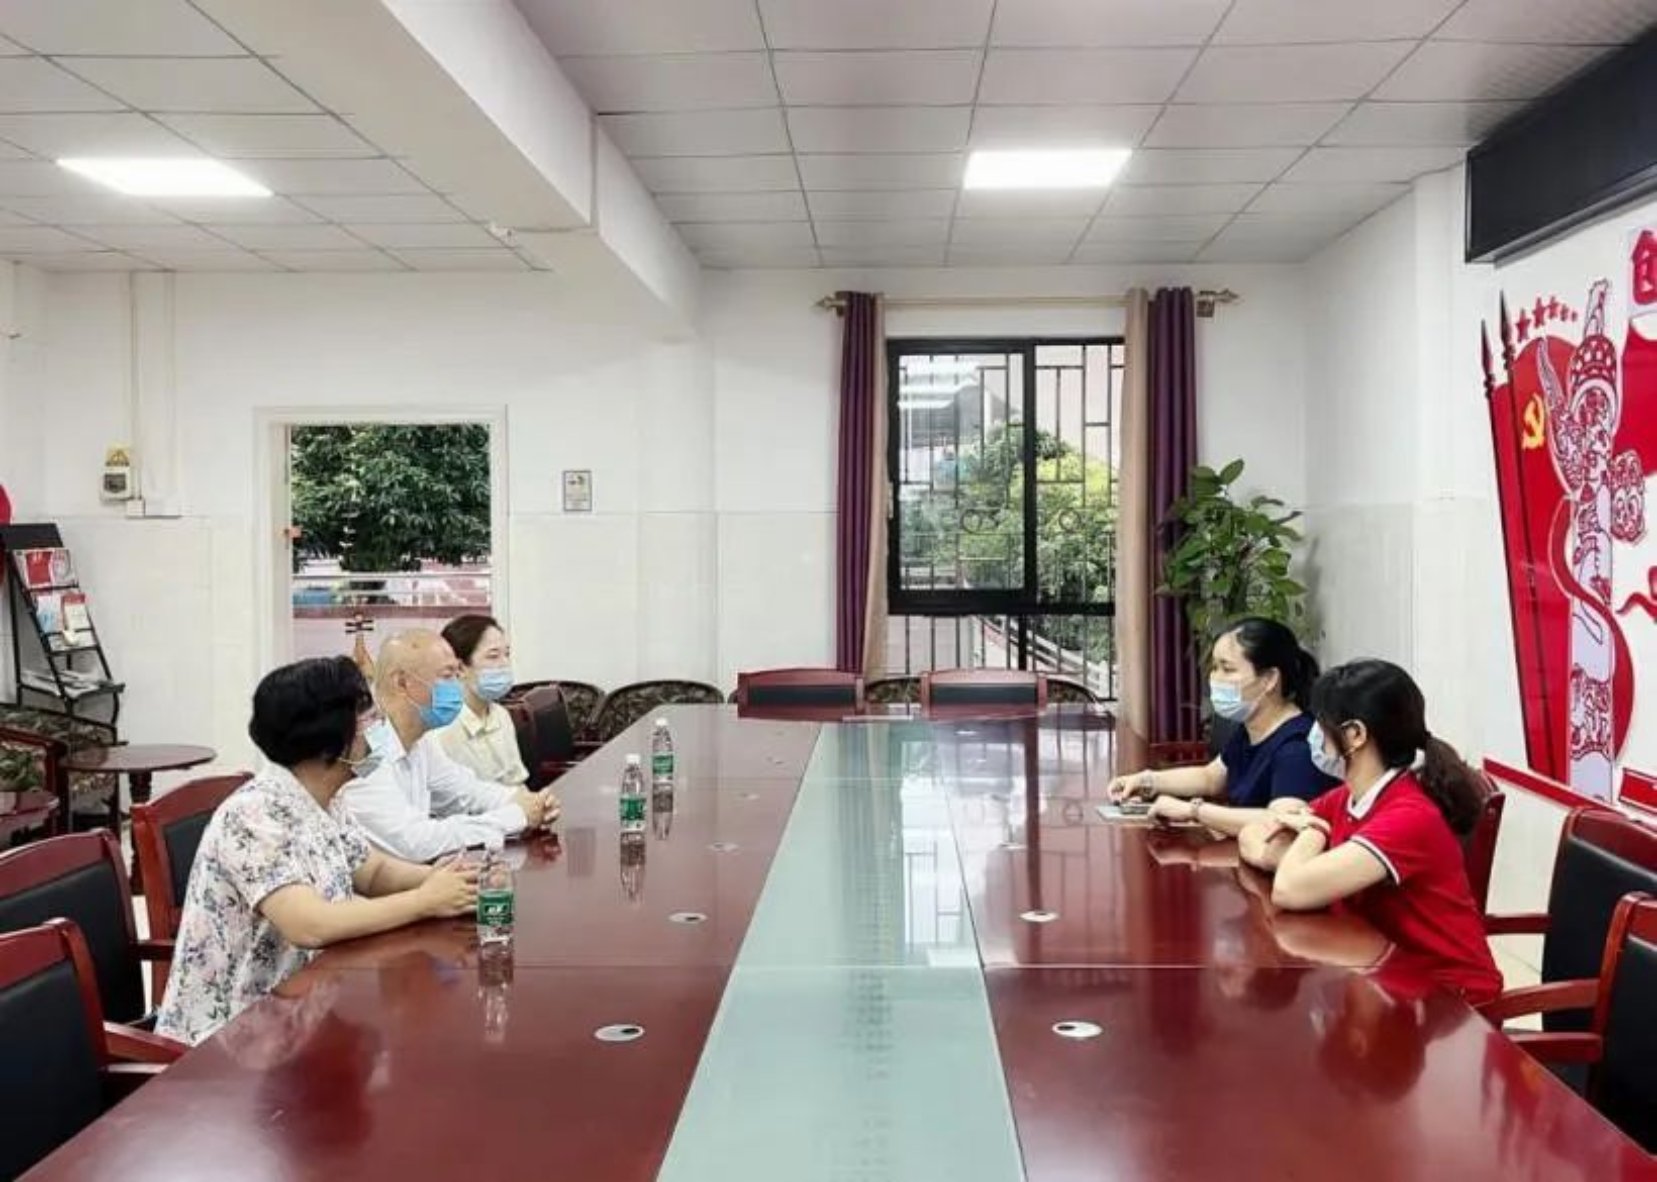 大手拉小手，共建助成长—— 广州南方学院到从化区温泉镇幼儿园开展慰问活动